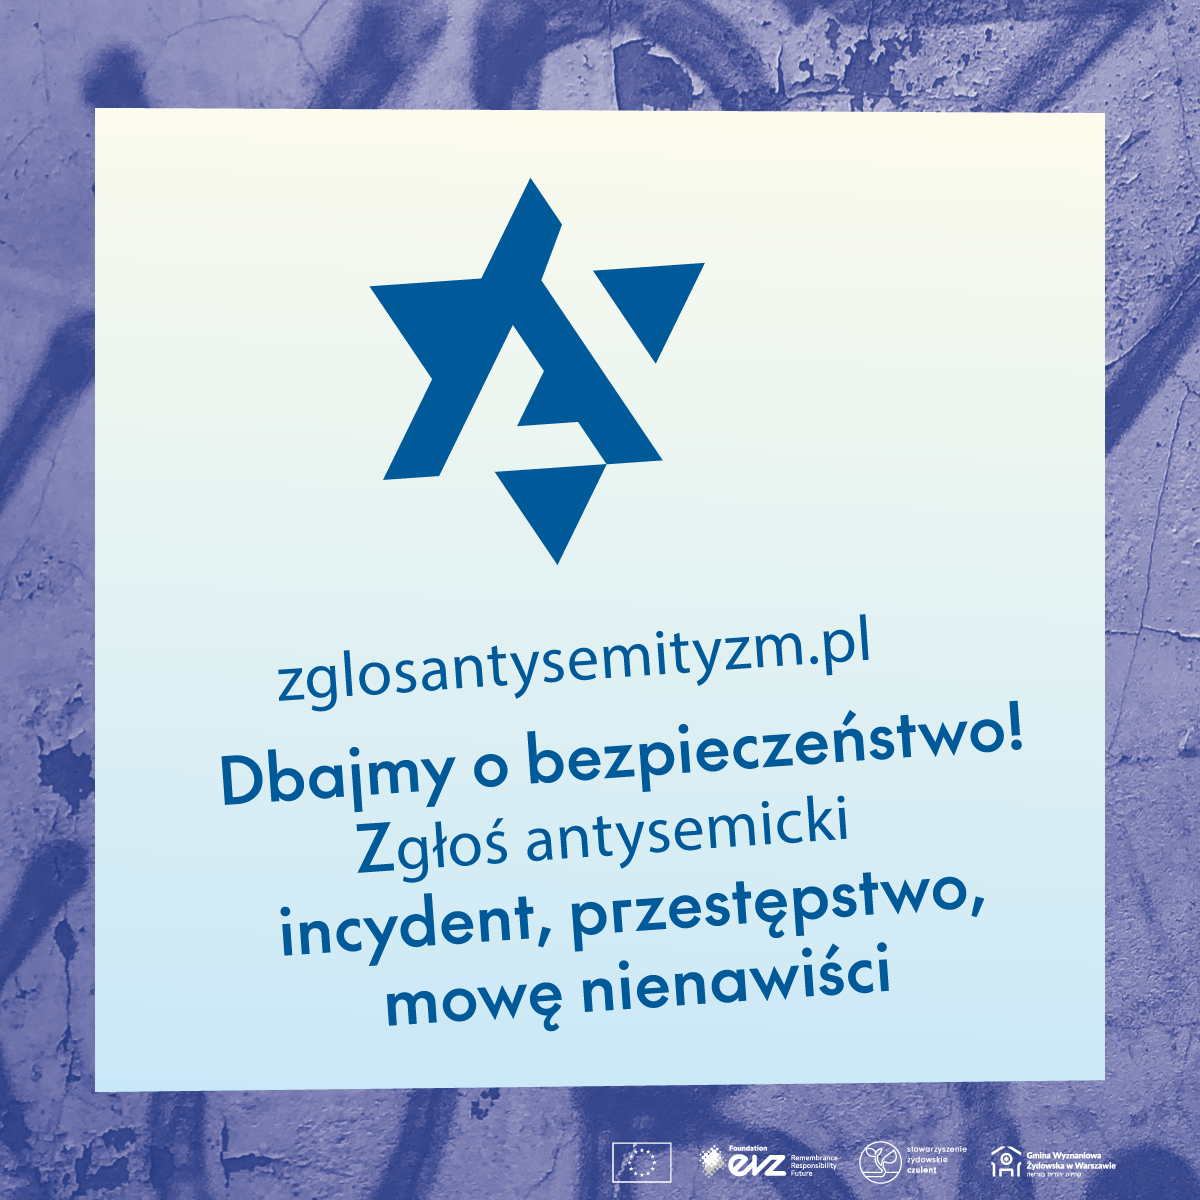 zglosantysemityzm.pl